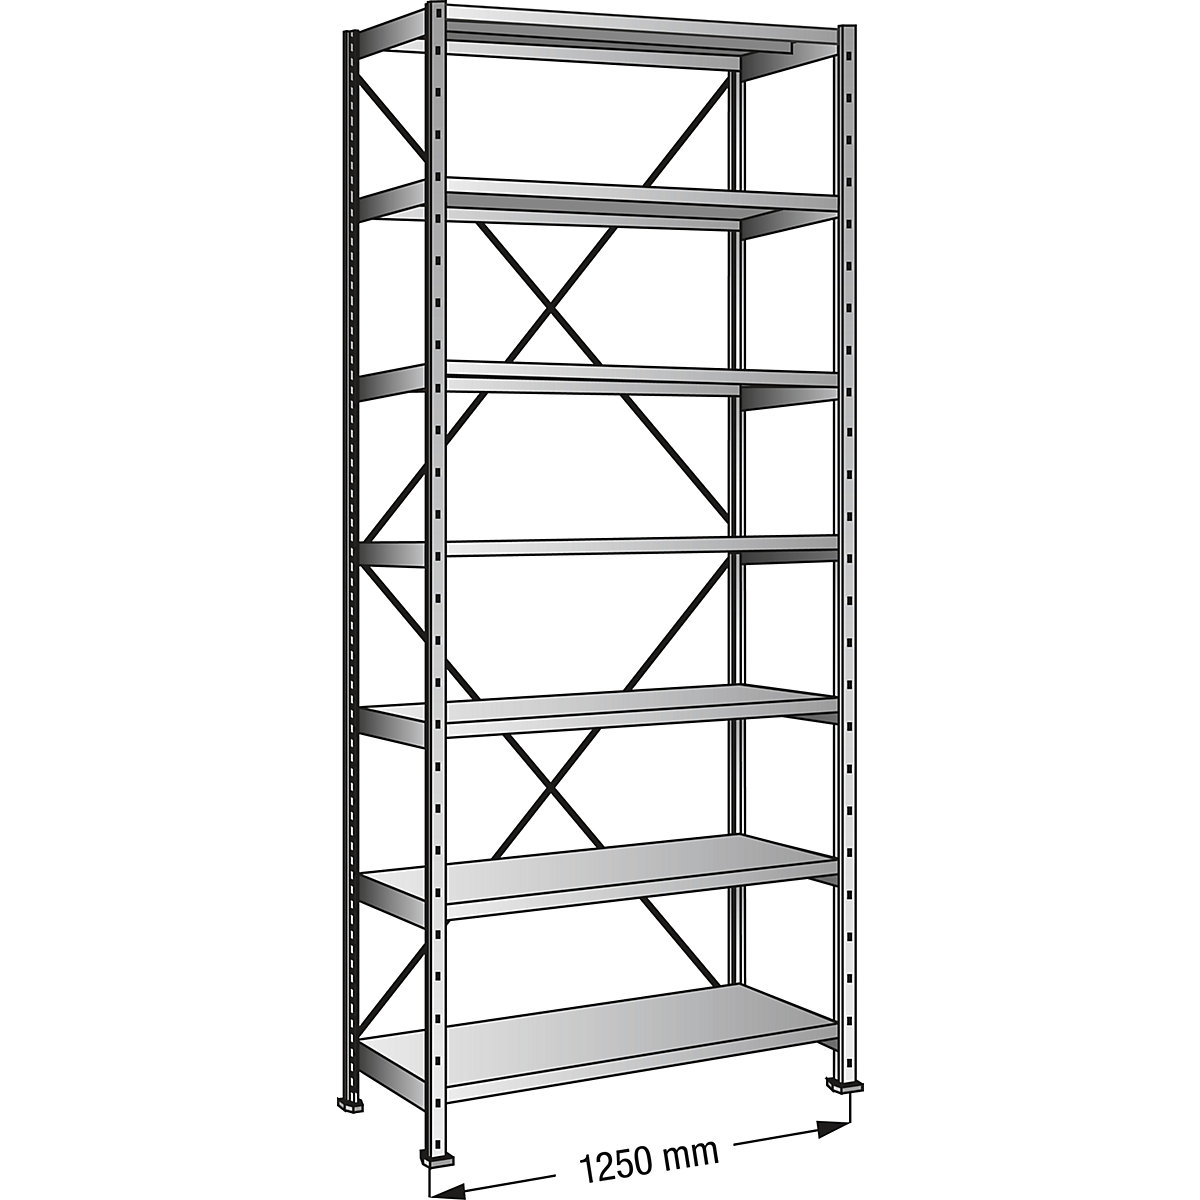 Boltless shelving unit, zinc plated, 7 shelves, height 2640 mm, shelf width 1200 mm, depth 300 mm, standard shelf unit